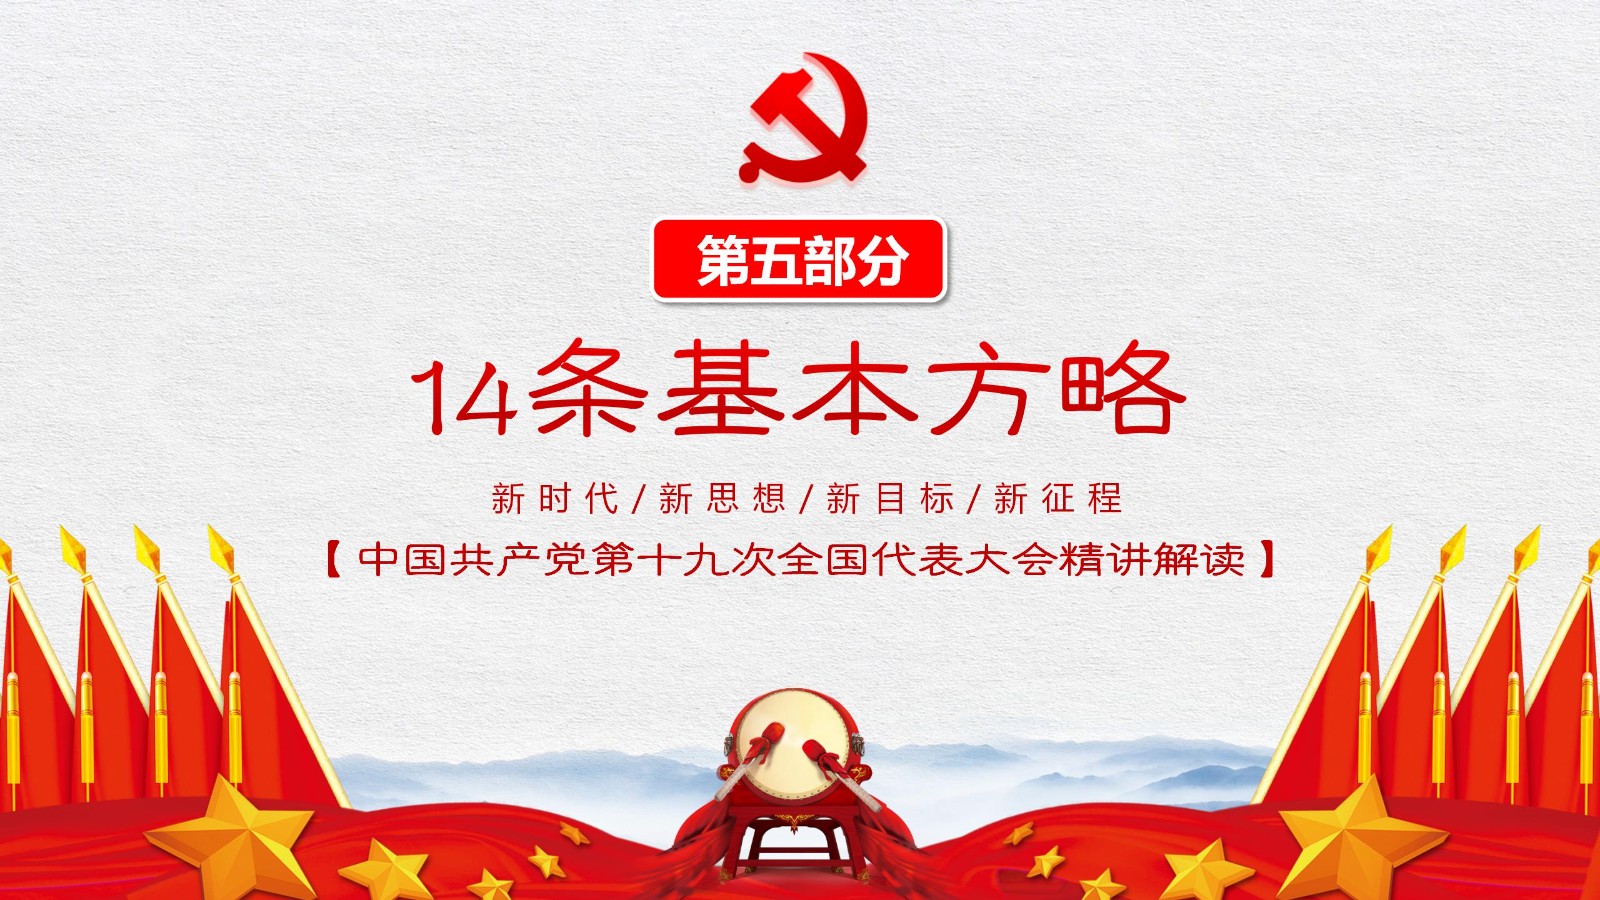 中国特色社会主义旗帜模板35